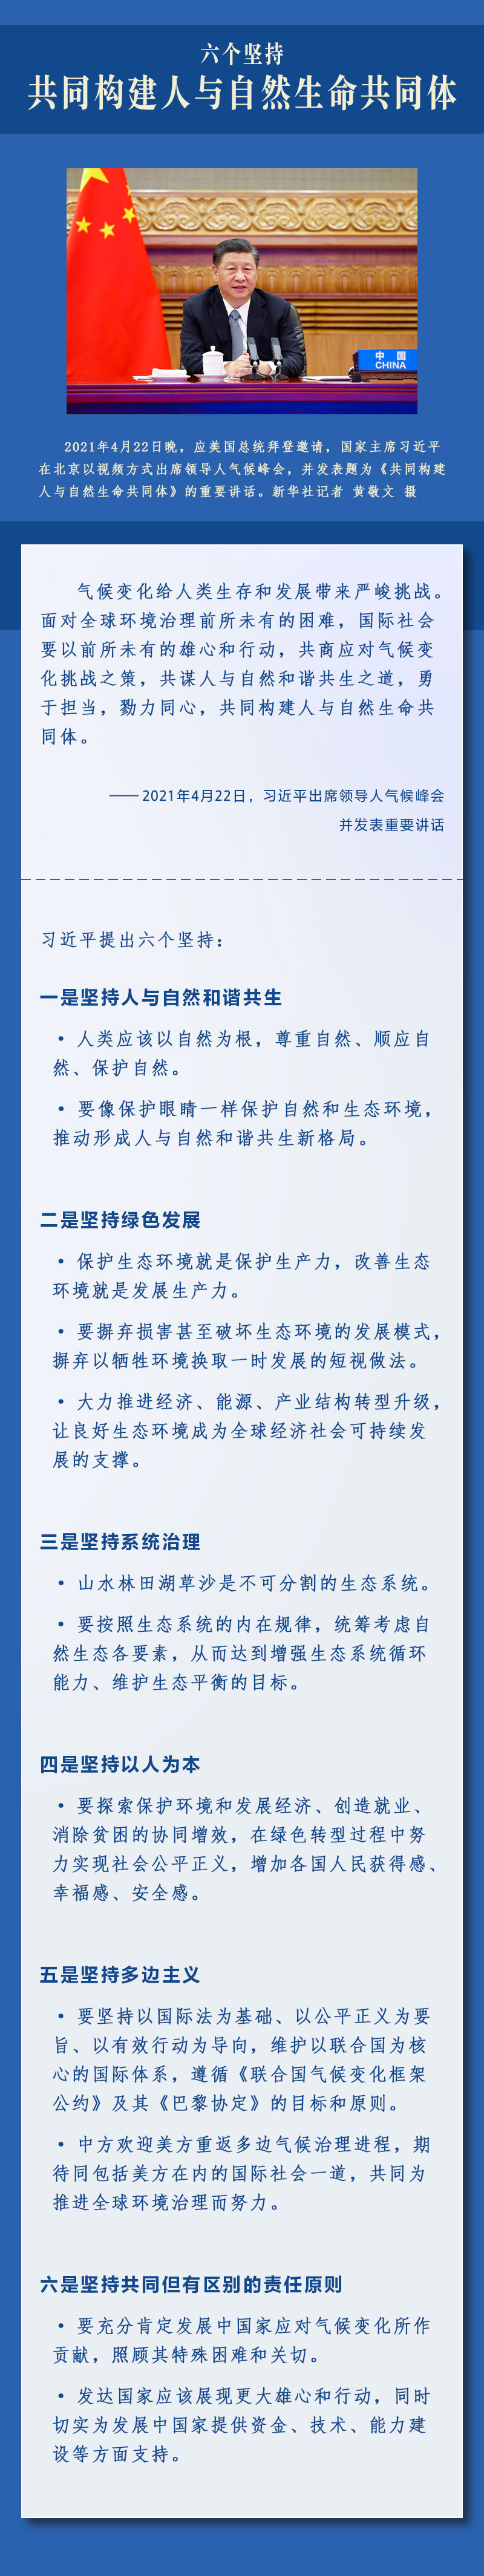 习近平提出中国方案3 人民网-中国共产党新闻网.jpg